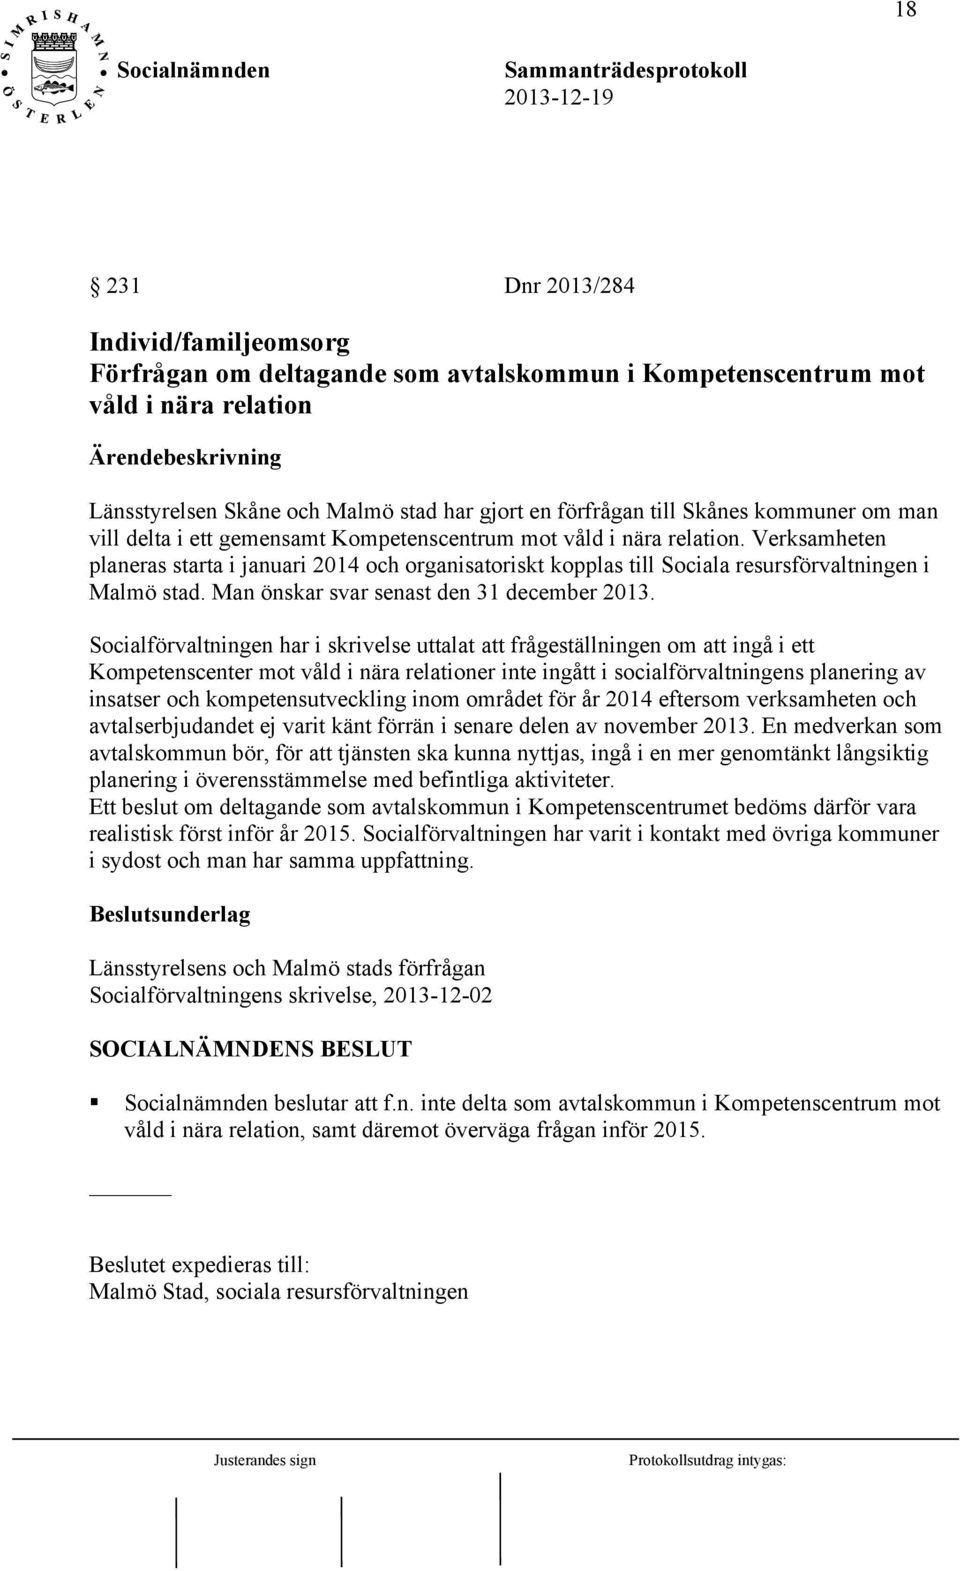 Verksamheten planeras starta i januari 2014 och organisatoriskt kopplas till Sociala resursförvaltningen i Malmö stad. Man önskar svar senast den 31 december 2013.